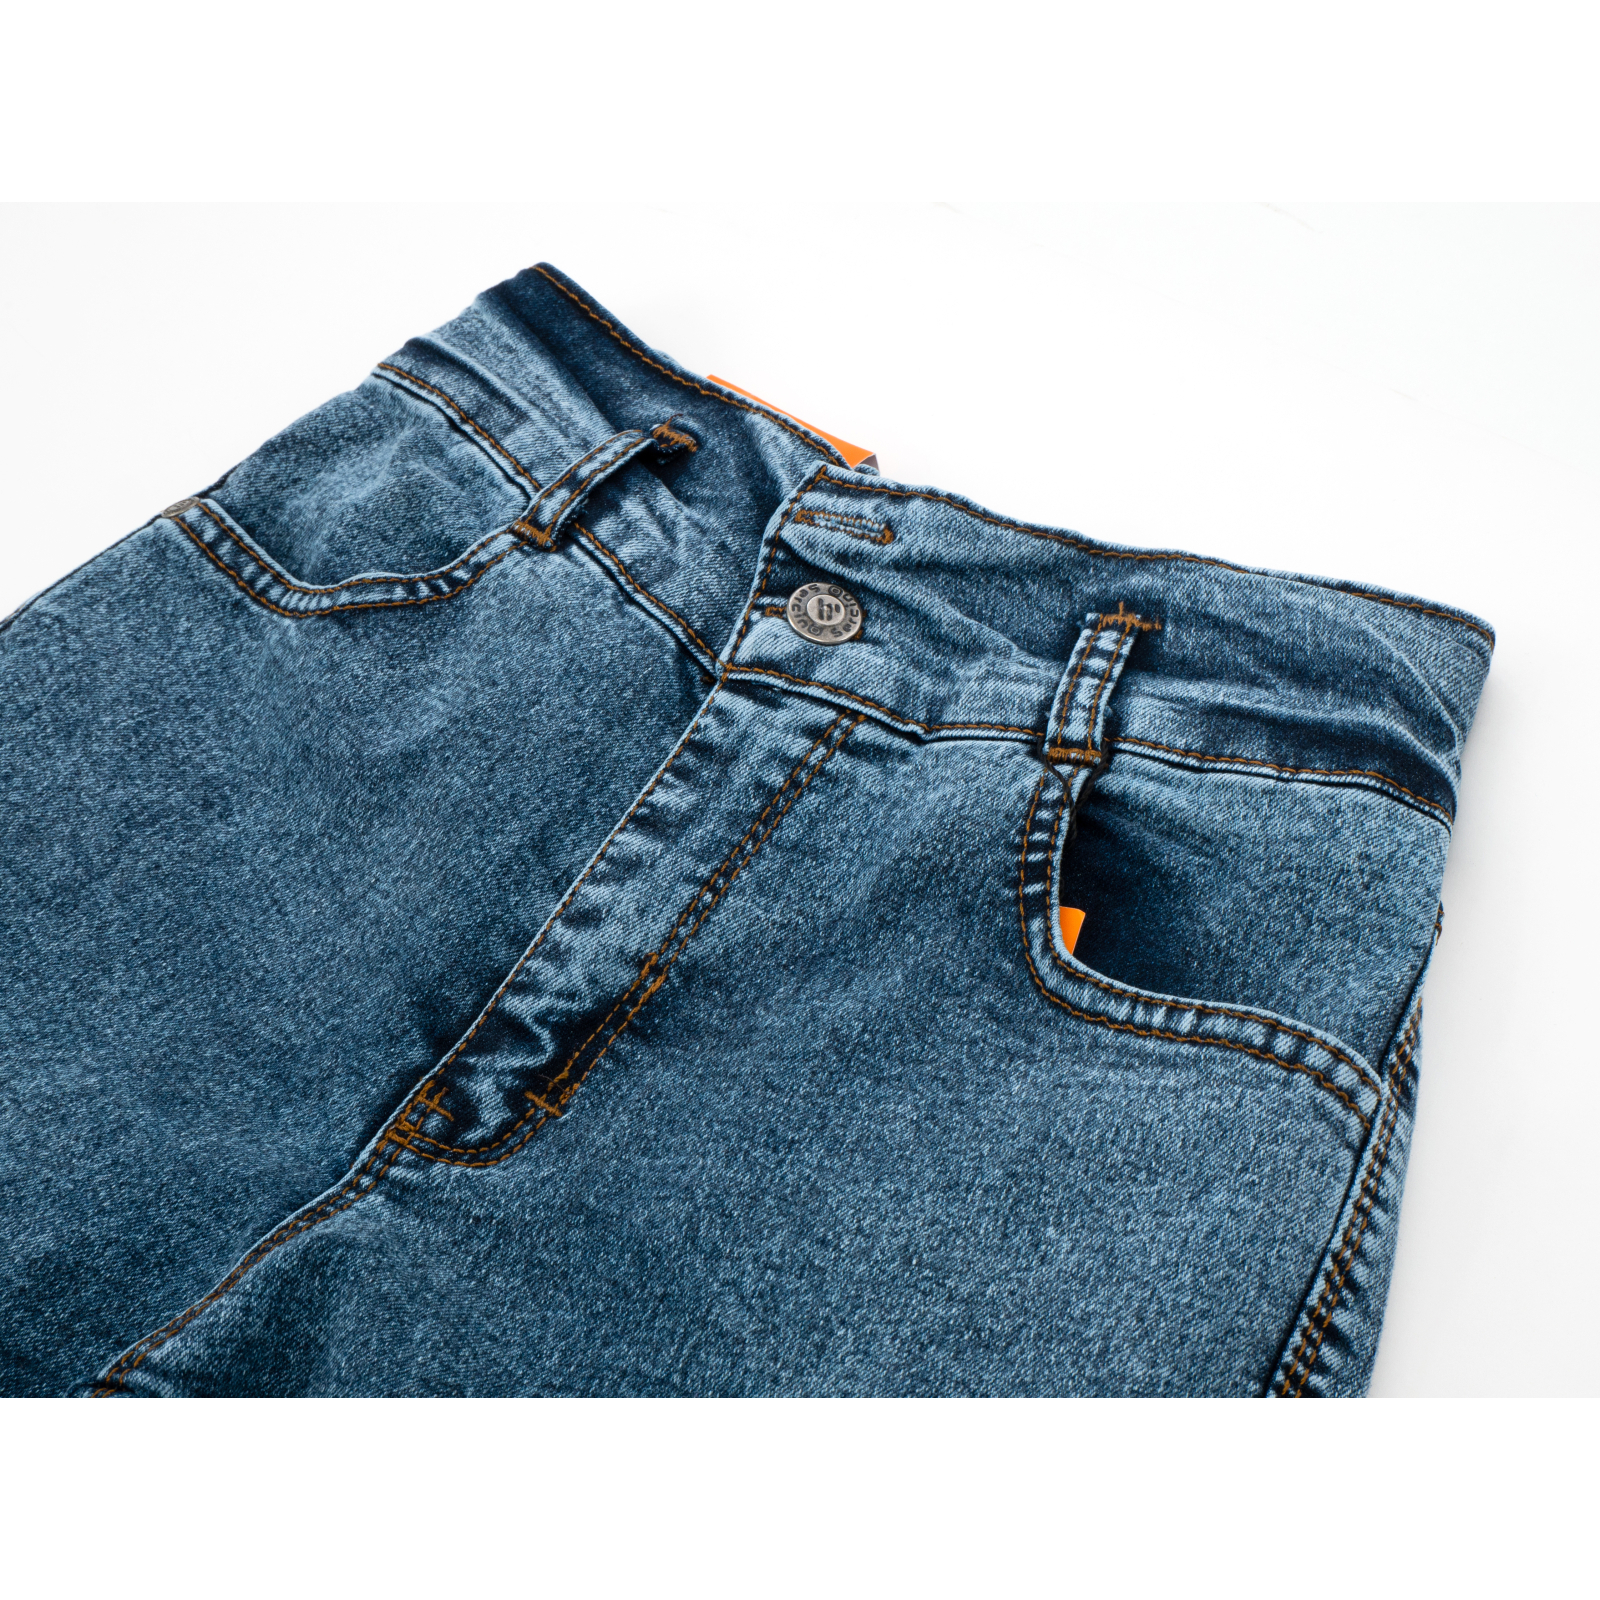 Джинсы Sercino с карманами (59654-158G-blue) изображение 3